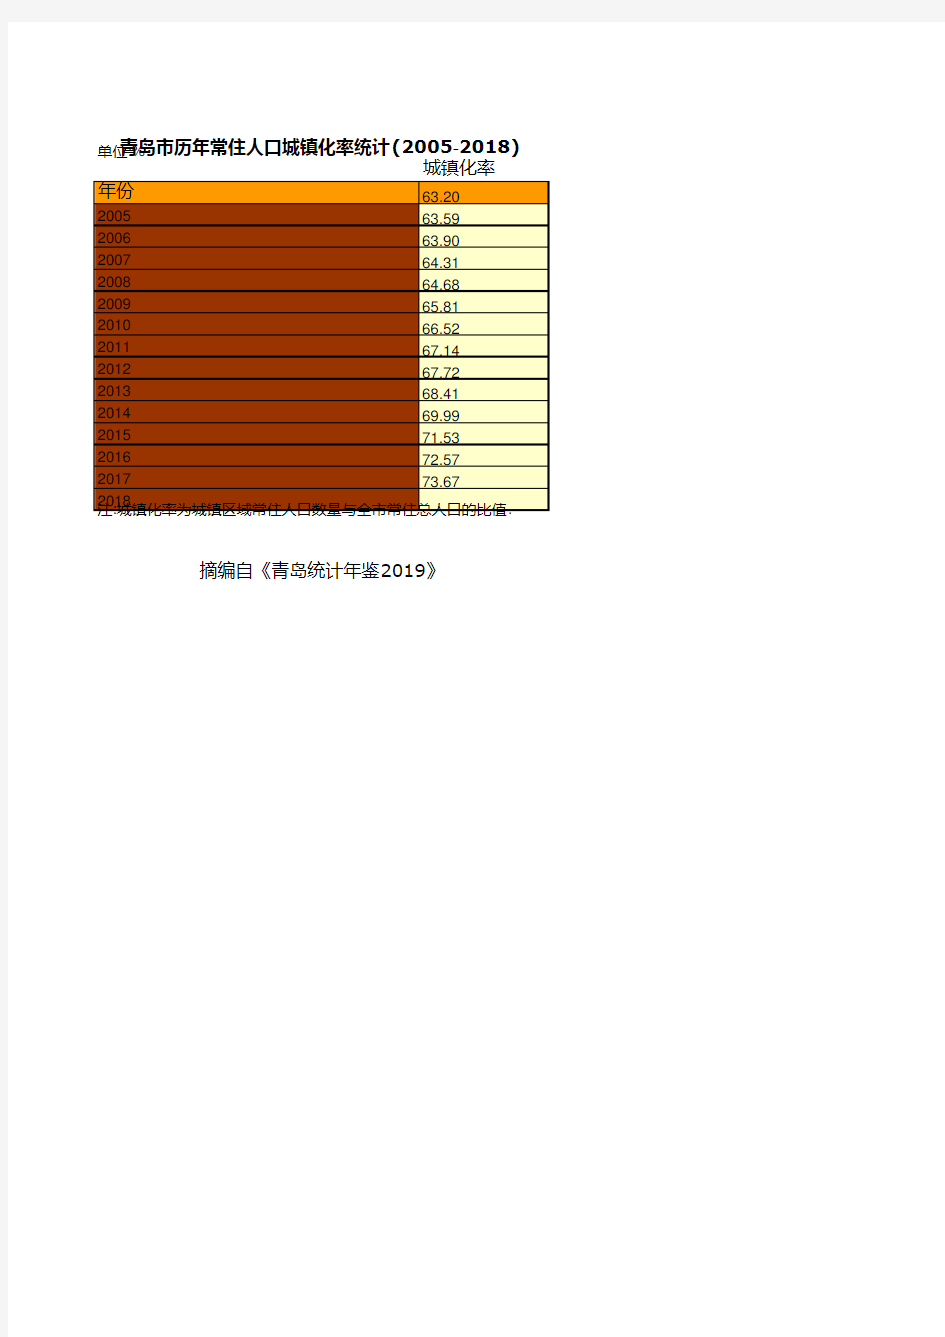 青岛市统计年鉴社会经济发展指标数据：历年常住人口城镇化率统计(2005-2018)